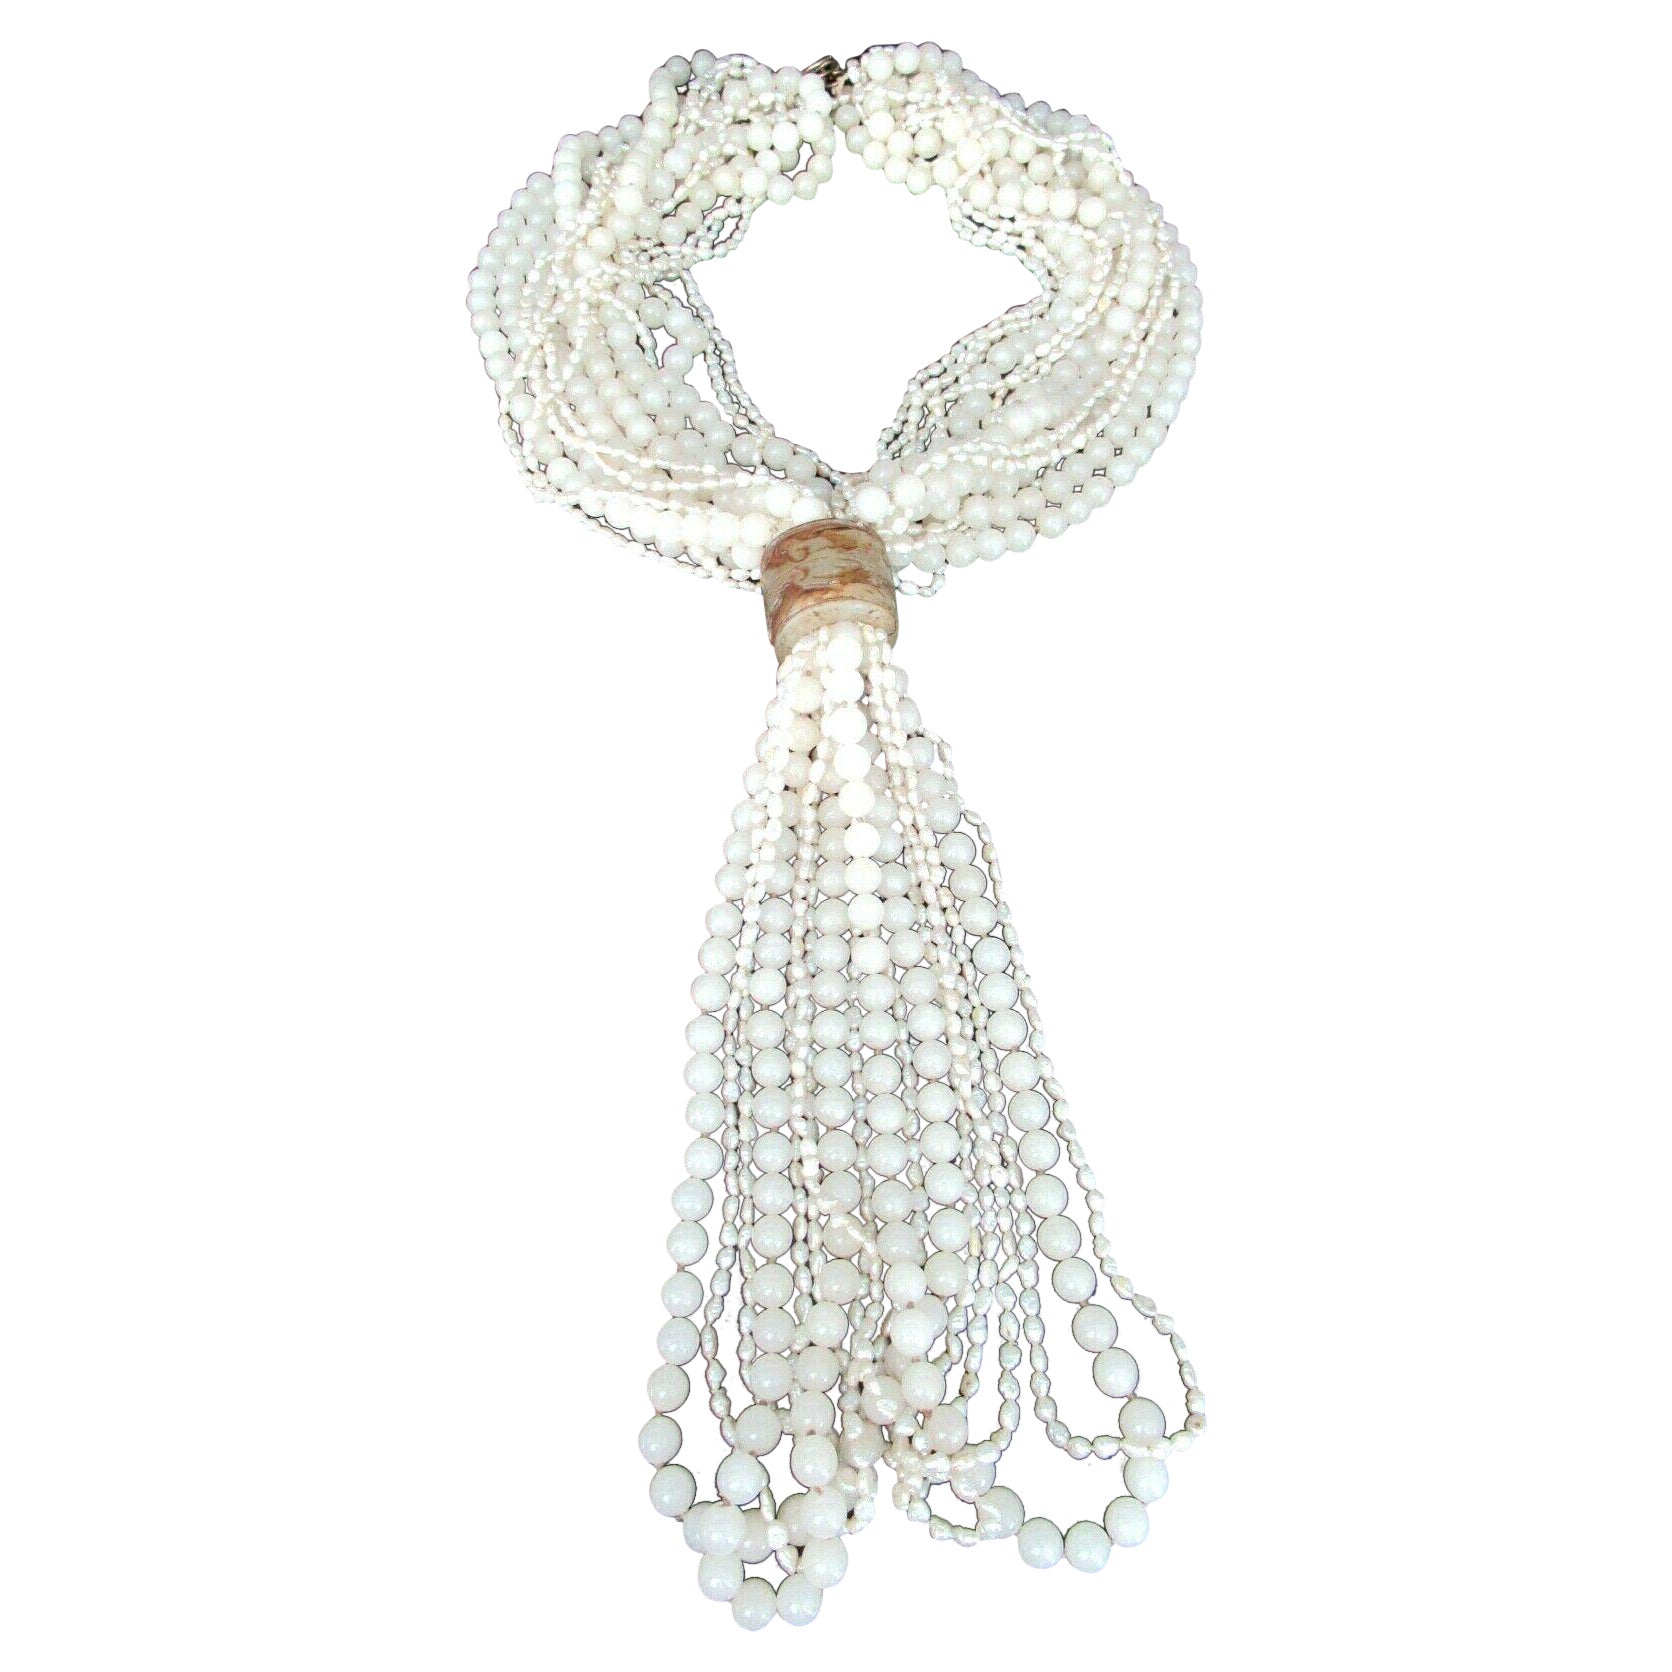 Montre d'exposition collier vintage à plusieurs rangs de perles, quartz sculpté et argenté